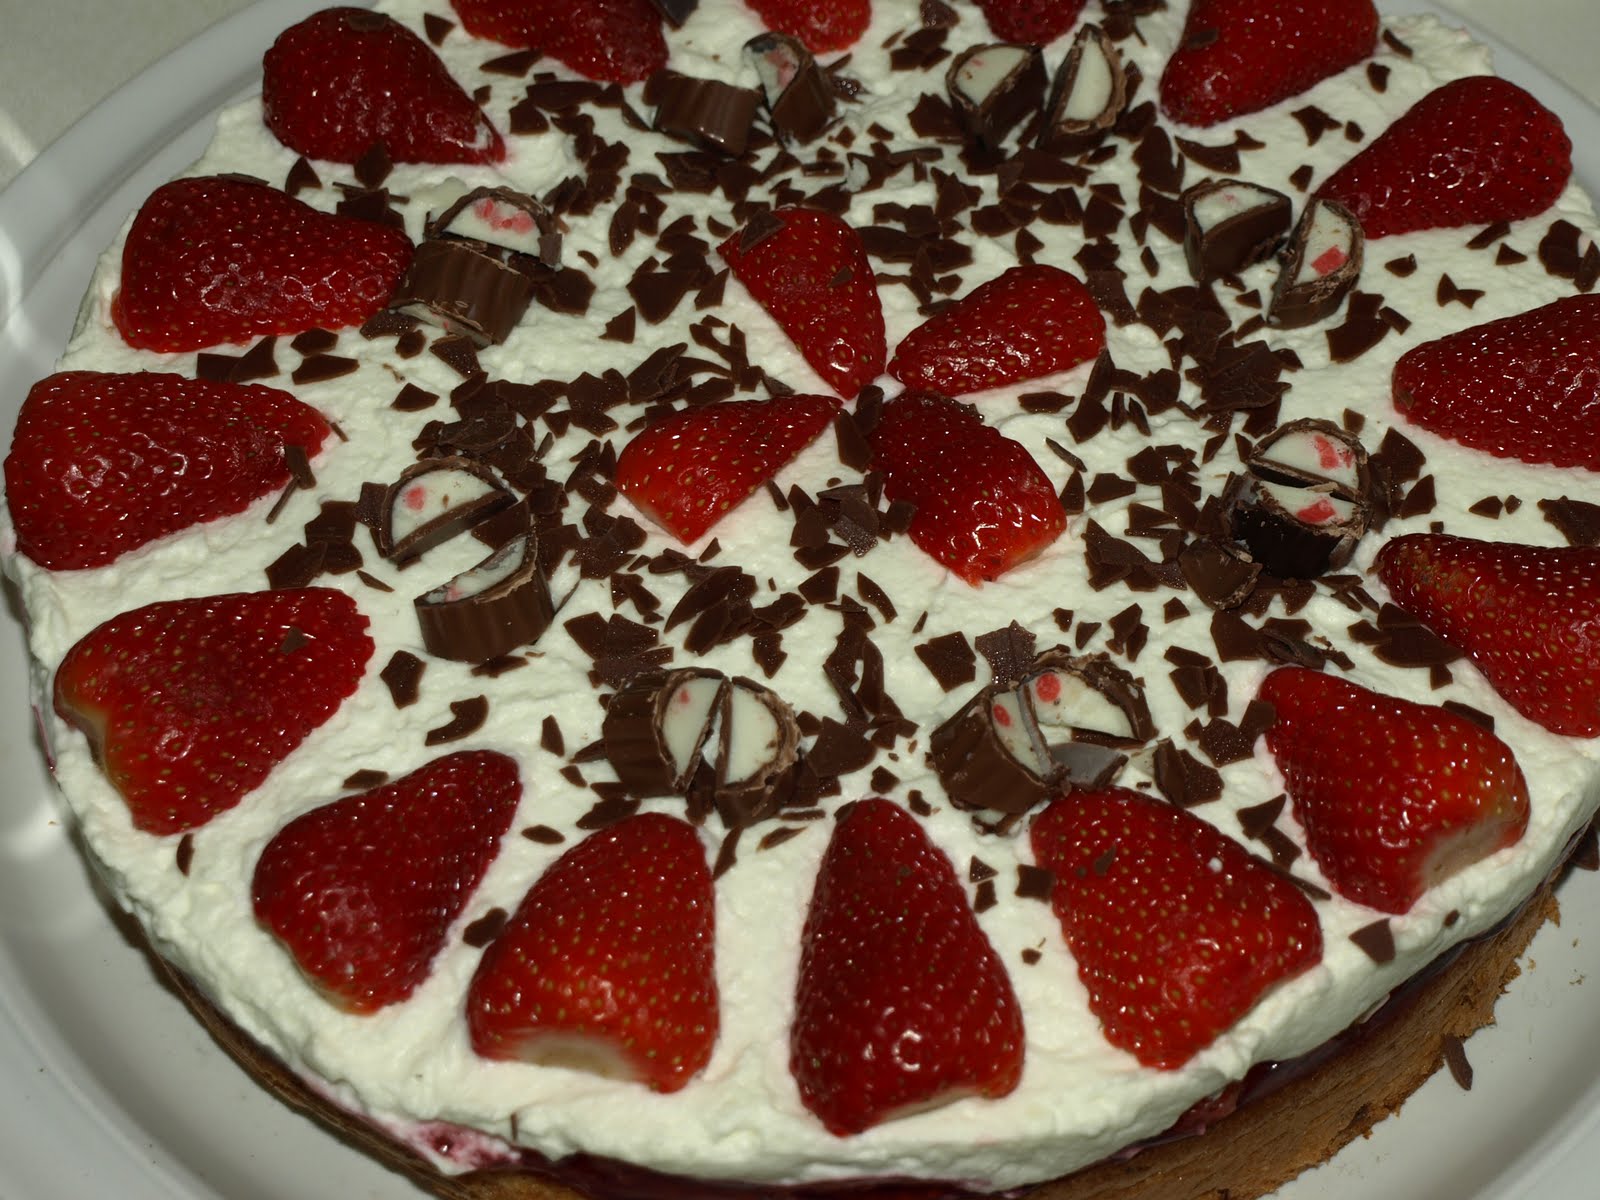 Hauptsache, es schmeckt!: Erdbeer-Yogurette-Torte